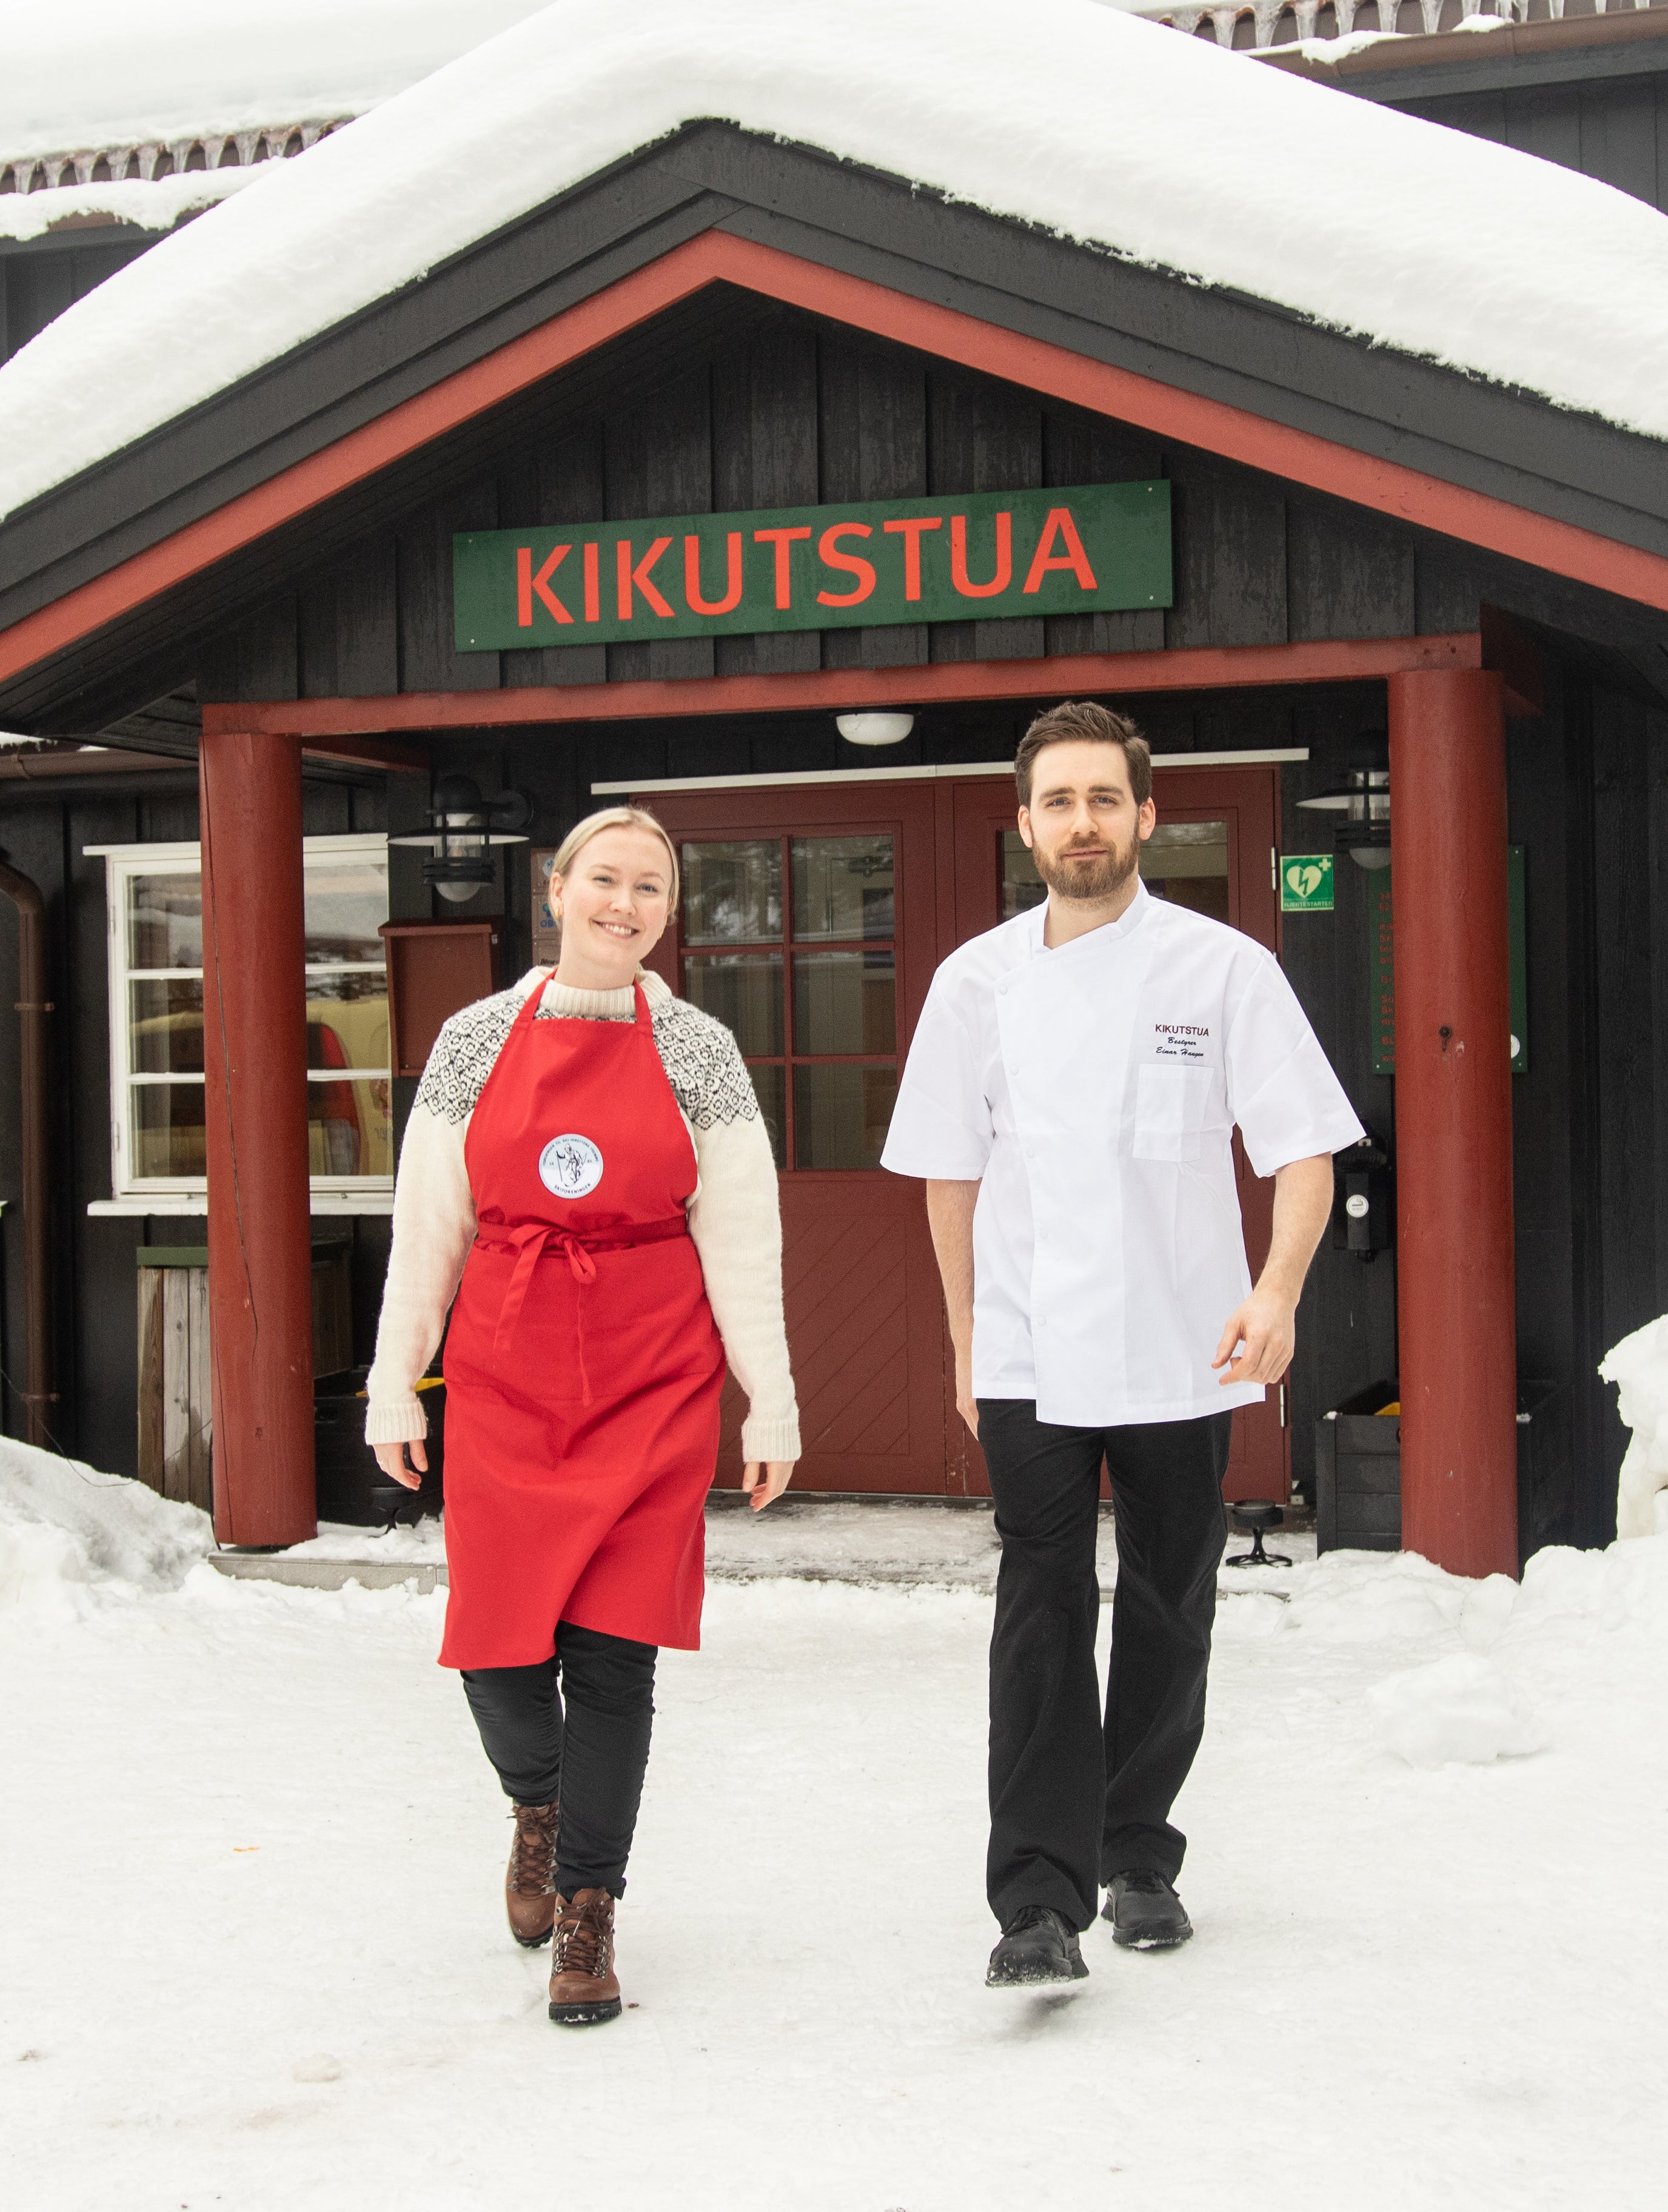 Kikutstua med snø på taket og samboerparet som eier stua i Oslomarka